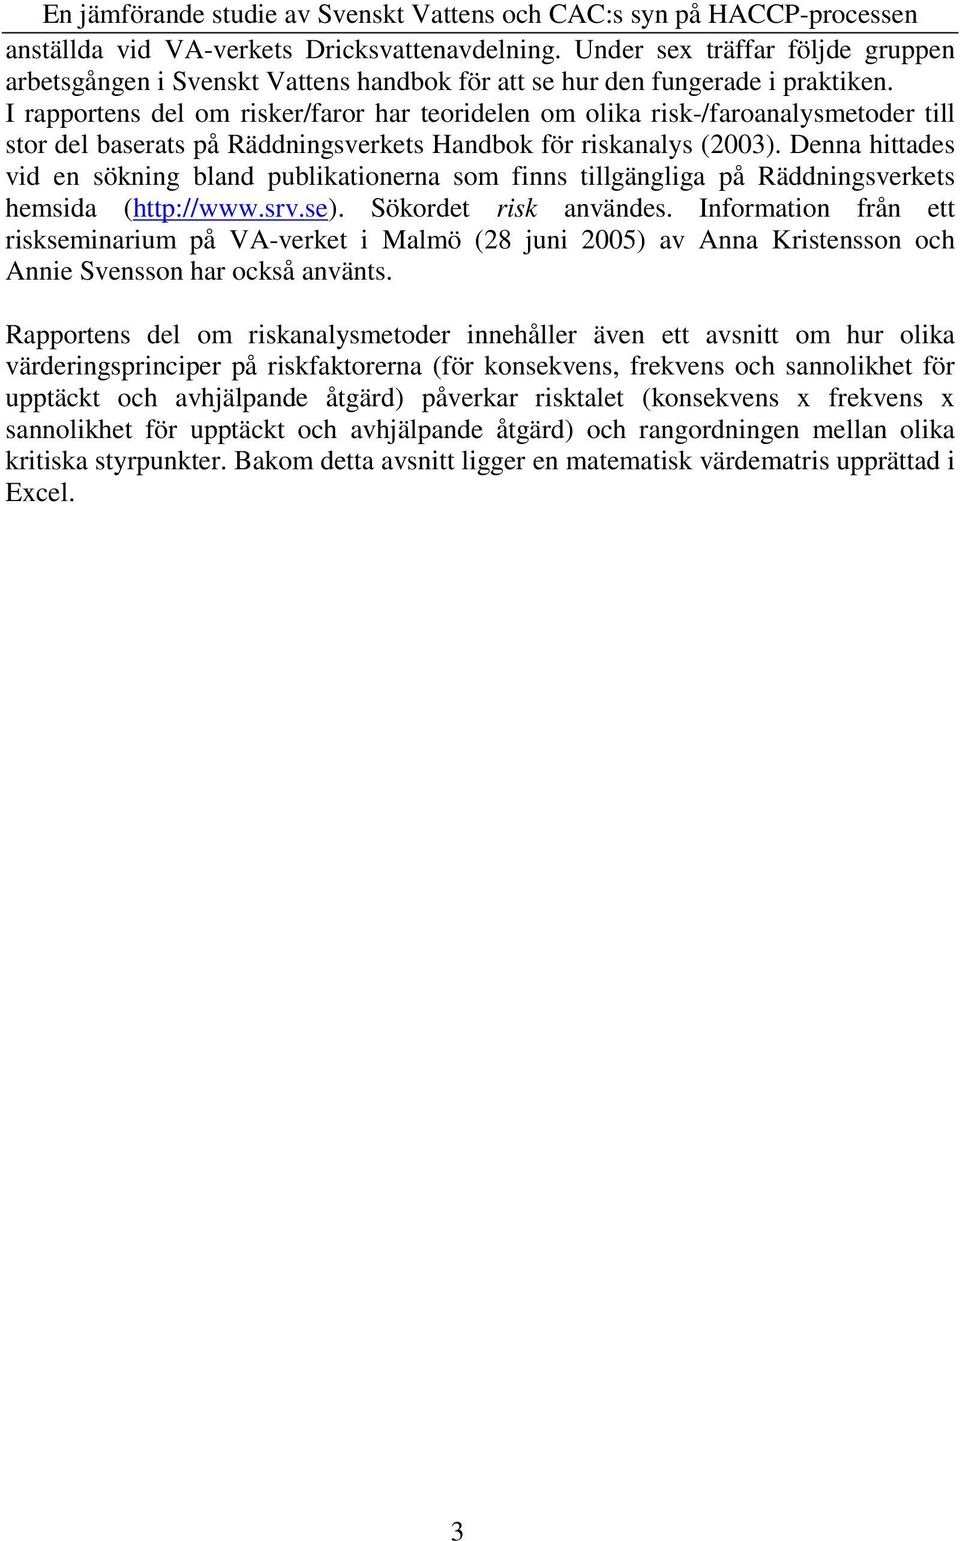 Denna hittades vid en sökning bland publikationerna som finns tillgängliga på Räddningsverkets hemsida (http://www.srv.se). Sökordet risk användes.